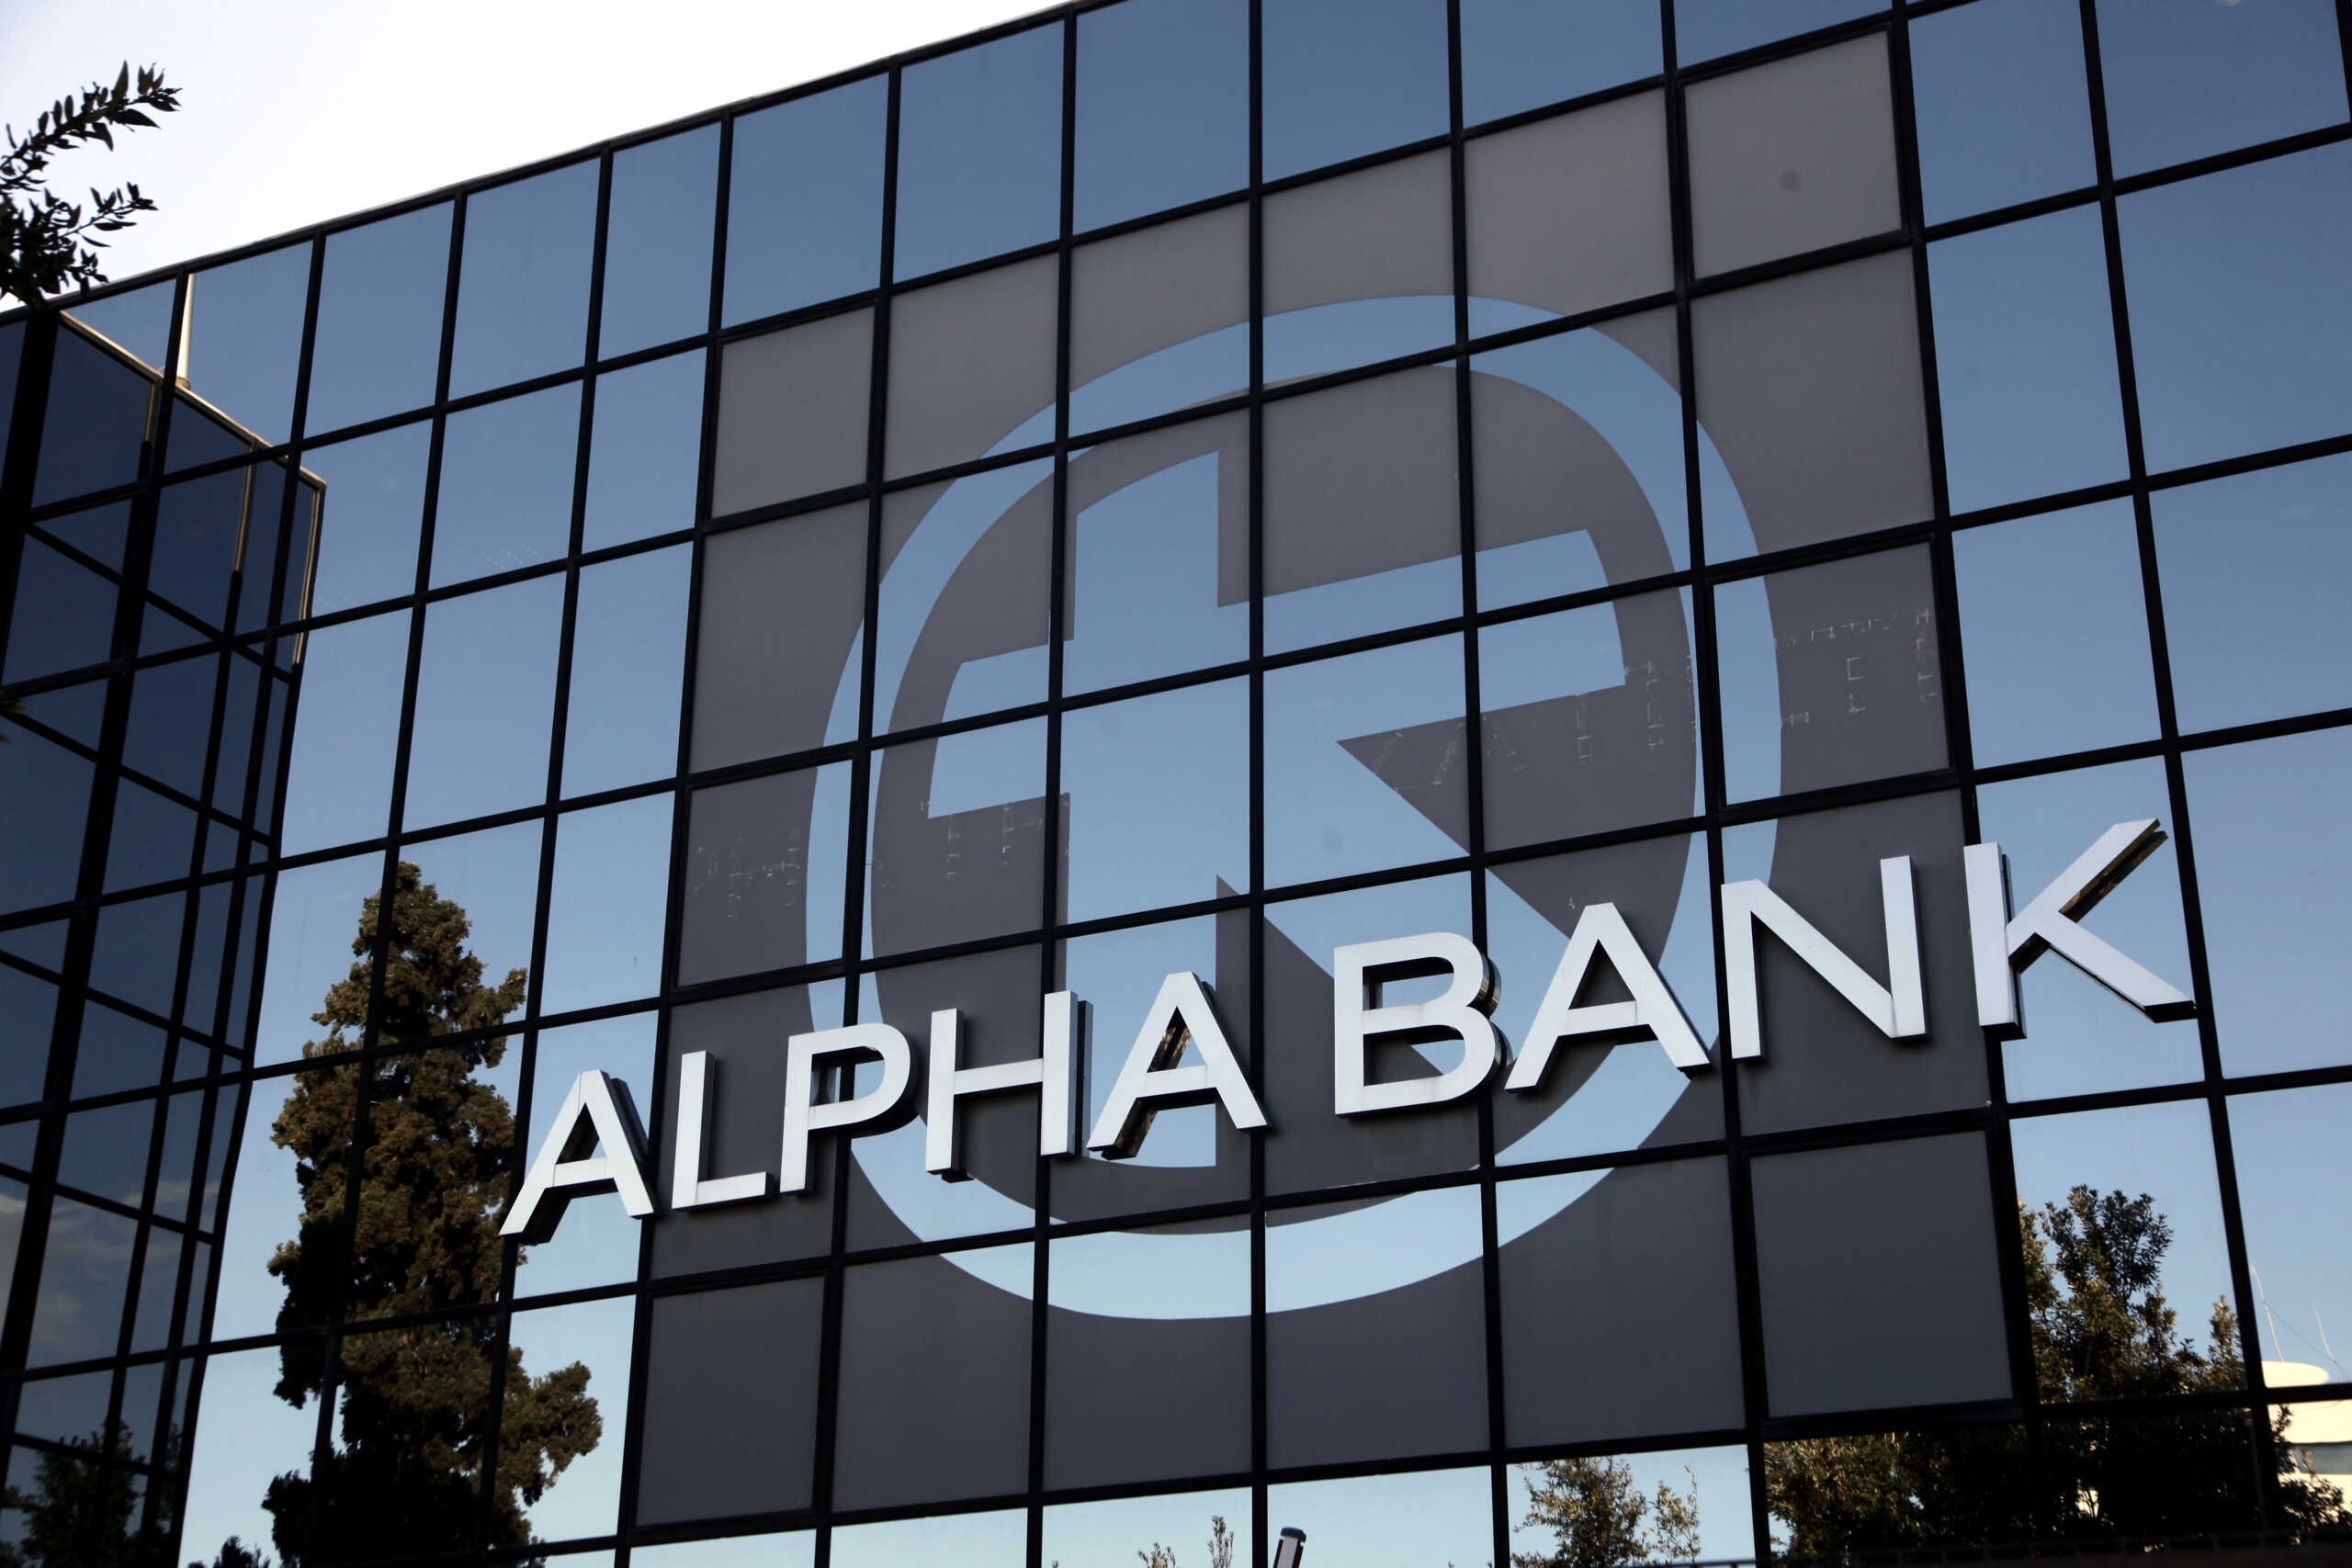 alphabank eurokinissi scaled 1.jpg